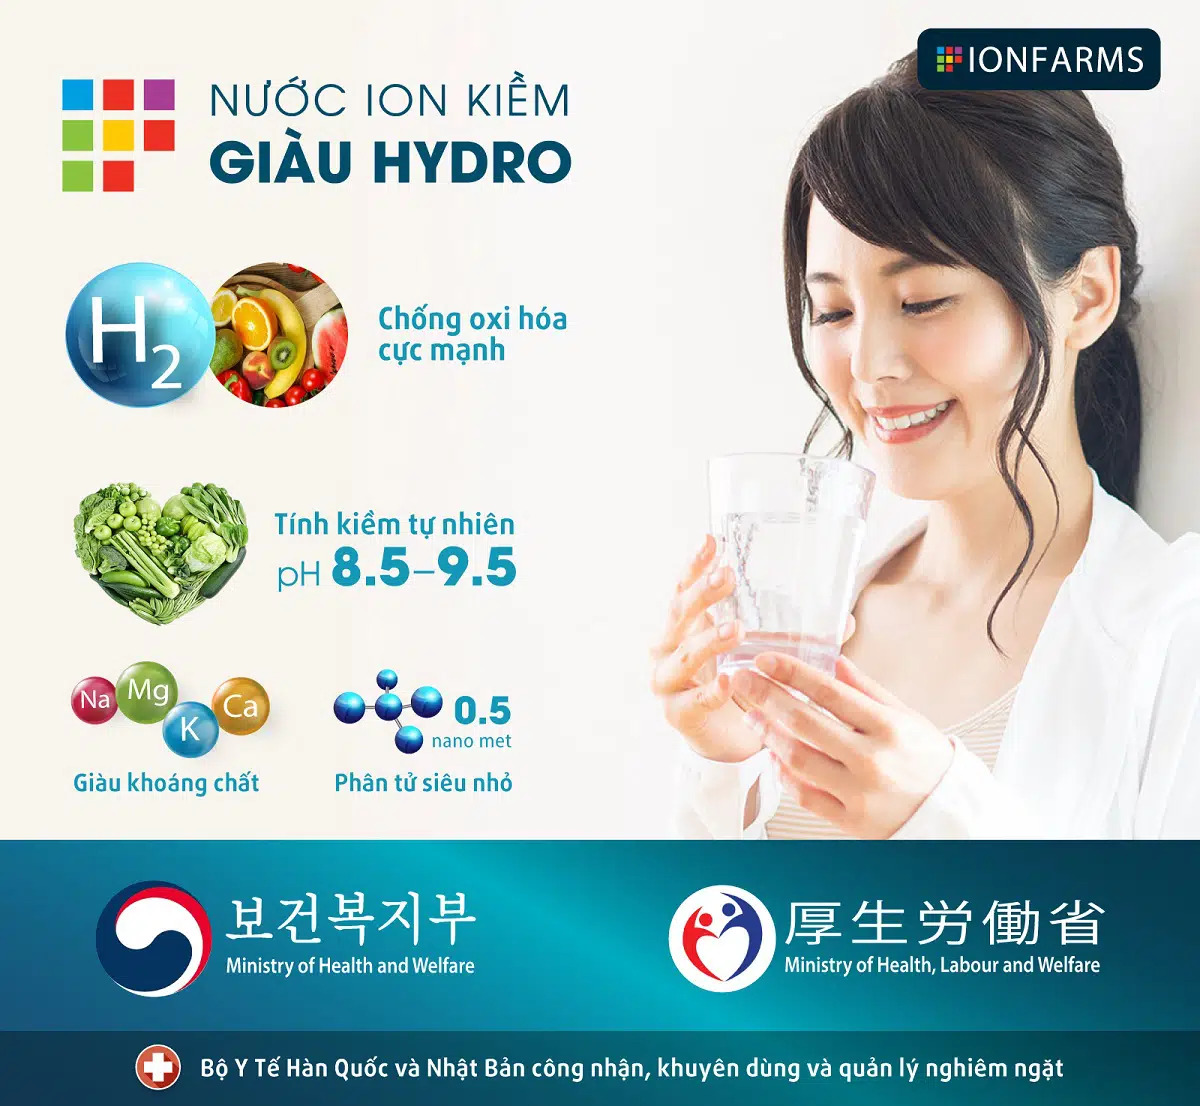 Nước ion kiềm giàu Hydro được Bộ Y tế Hàn Quốc và Bộ Y tế Nhật Bản khuyến khích sử dụng 